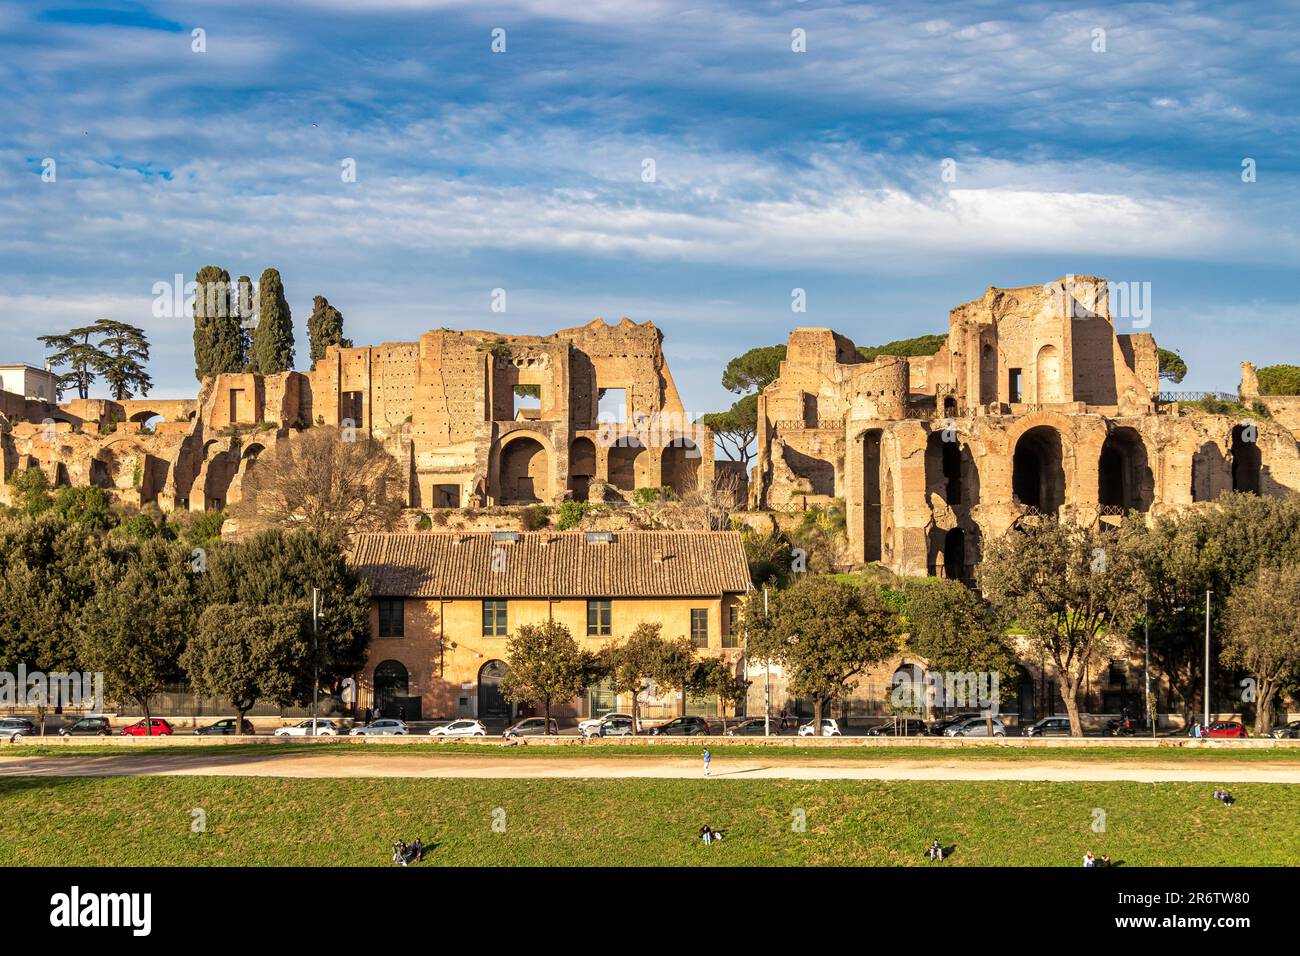 Le palais Domitian sur le Mont Palatin surplombant le Cirque Maximus, un ancien stade de course de chars romains et lieu de divertissement à Rome, en Italie Banque D'Images